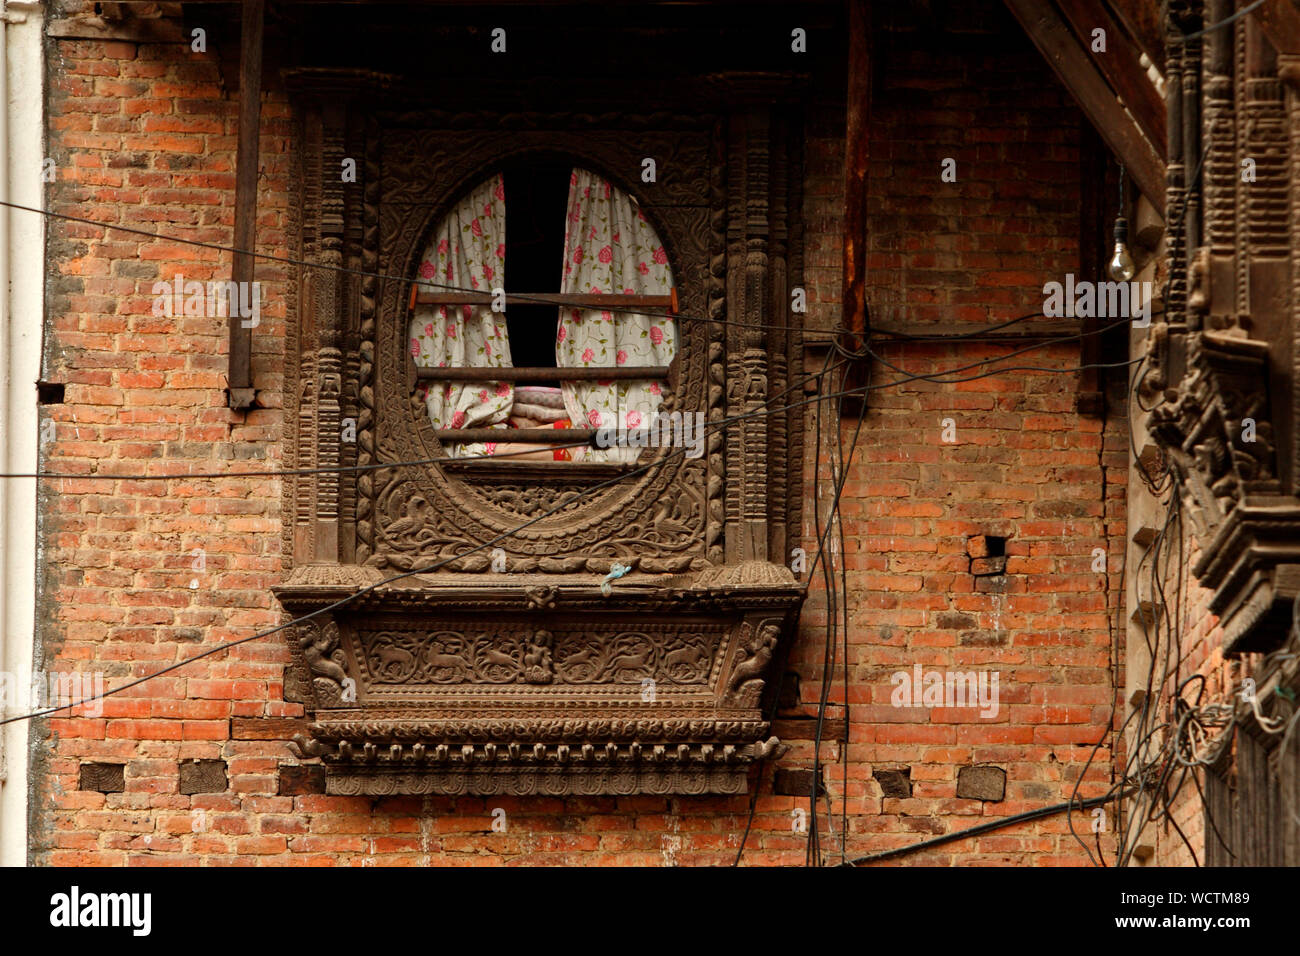 Des sculptures en bois d'une fenêtre, à Patan, également connu sous le nom de Lalitpur (Ville de la beauté), au Népal. 2010. Patan est une ville de monuments bouddhiques, des temples hindous et des sculptures en bois. Banque D'Images